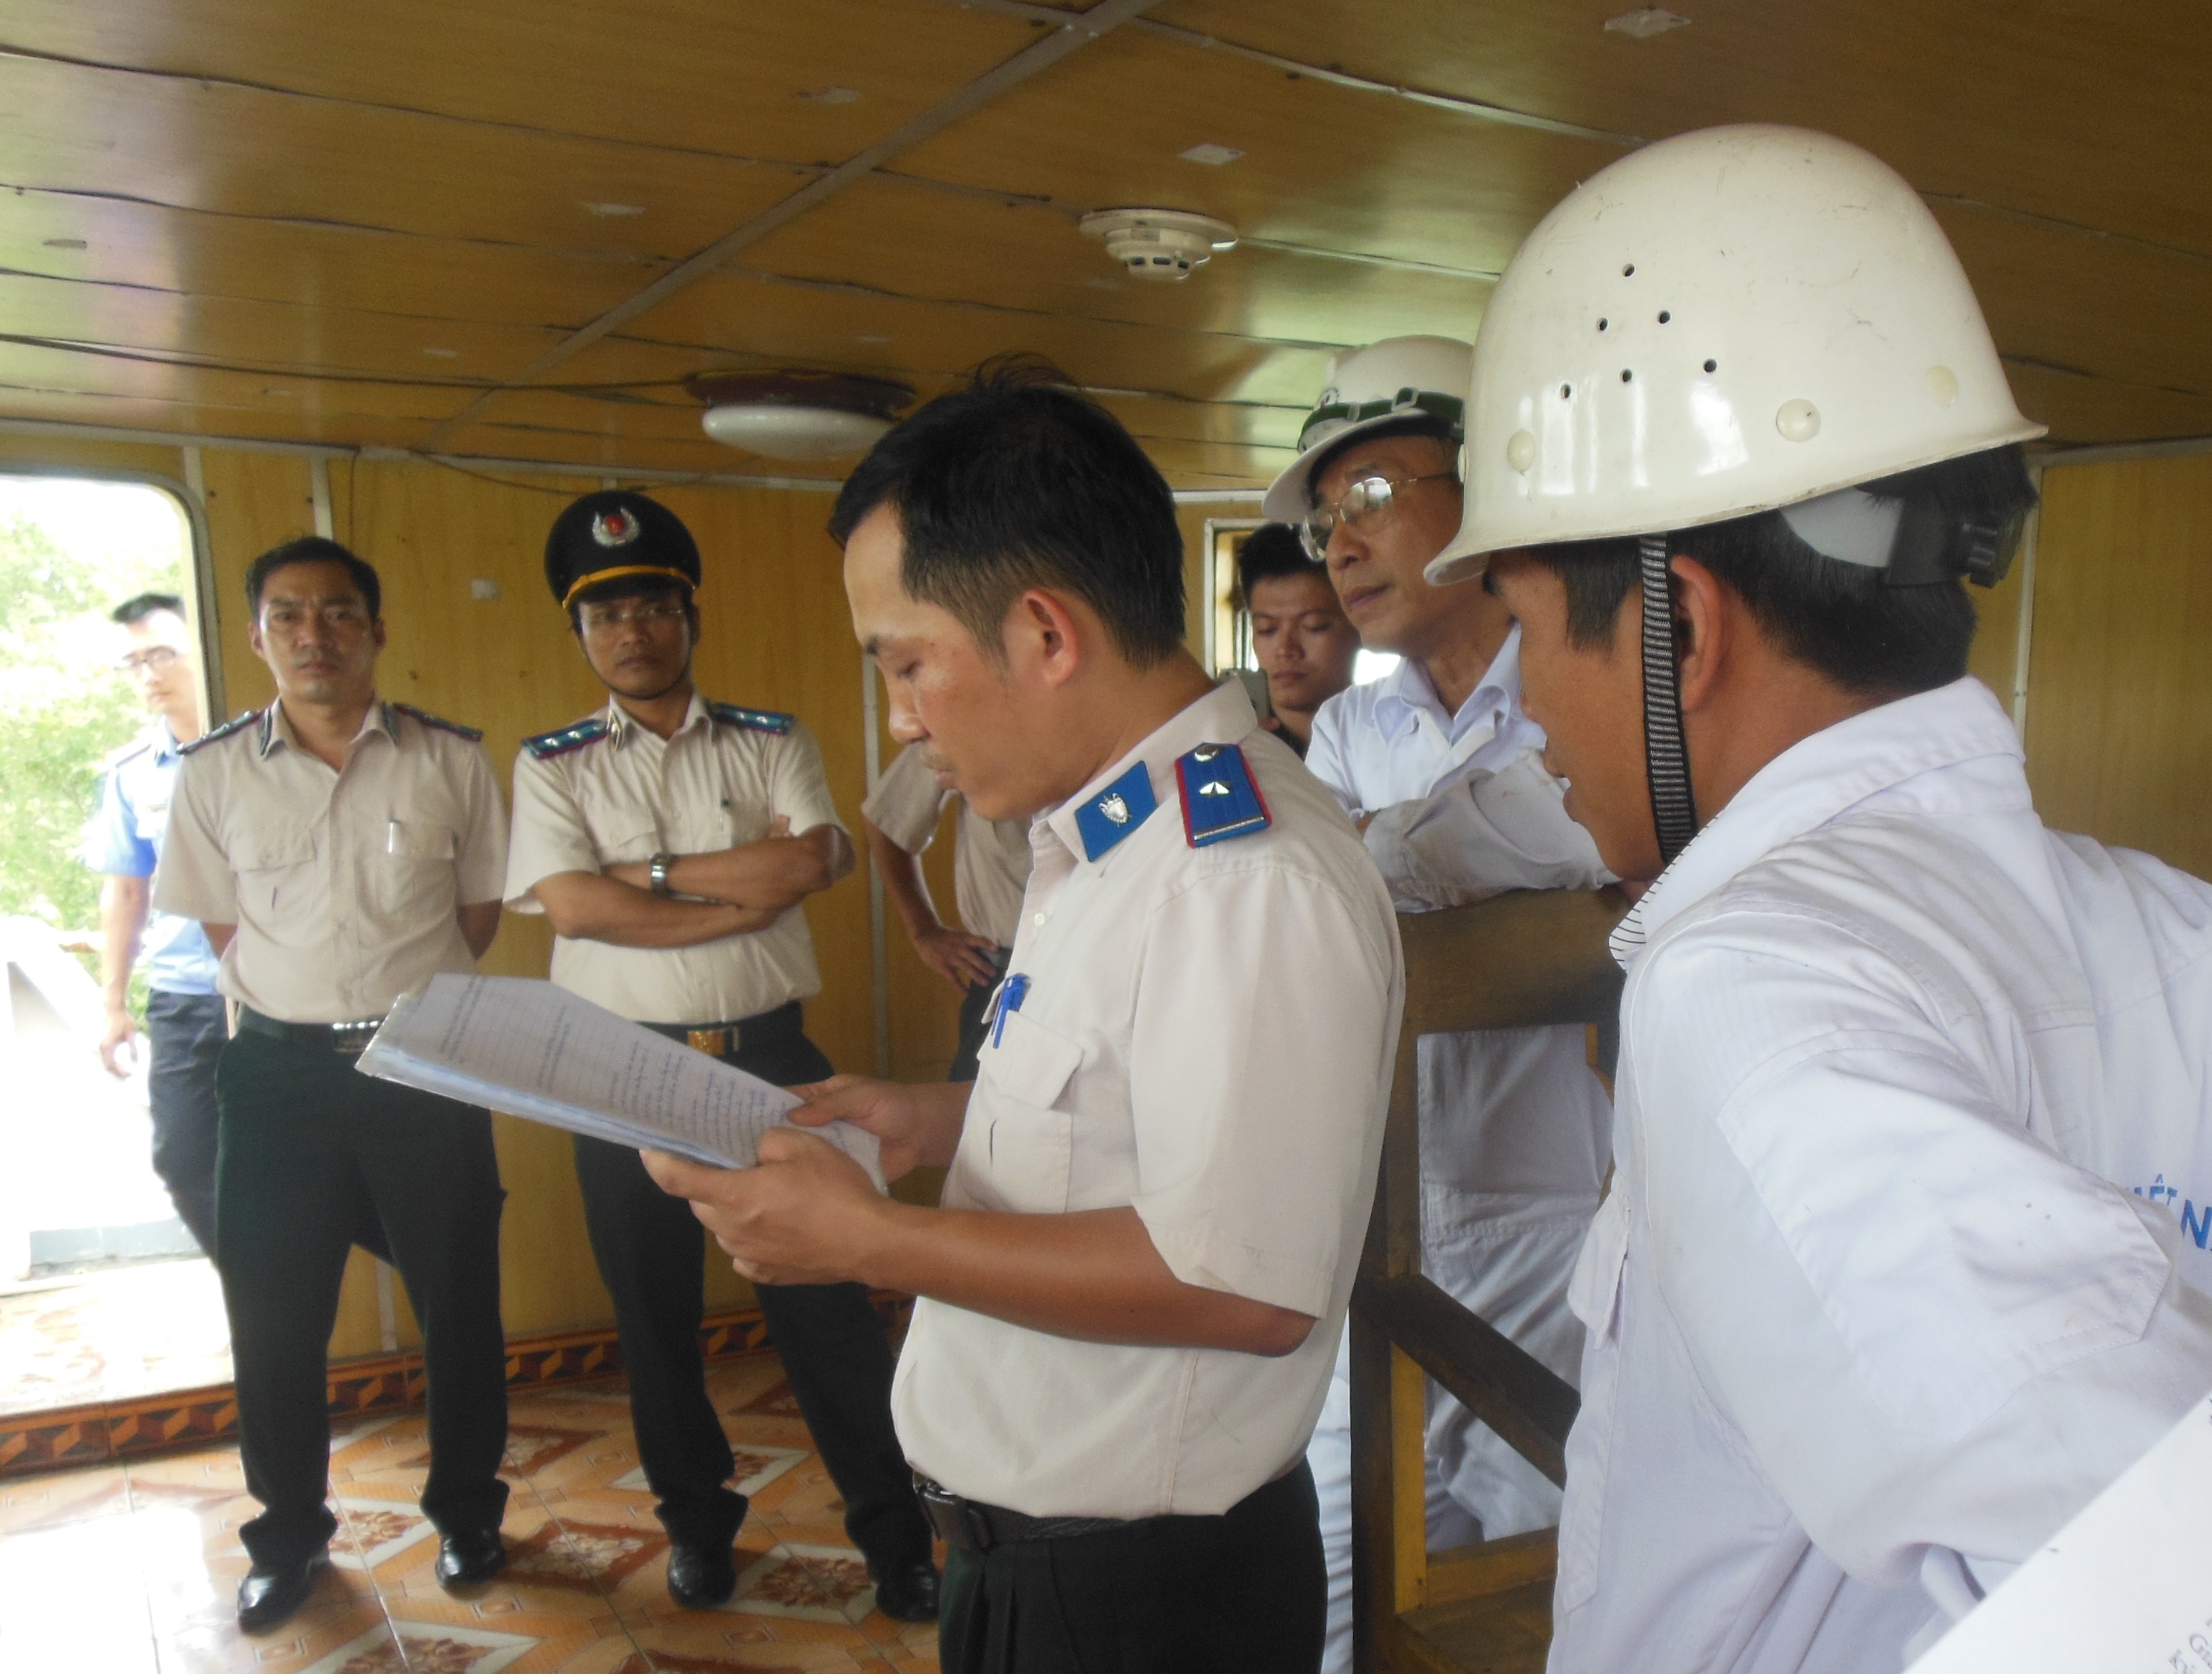 Chi cục Thi hành án huyện Thủy Nguyên tổ chức cưỡng chế kê biên tàu Đoàn Thắng 46 của Công ty cổ phần Đoàn Thắng